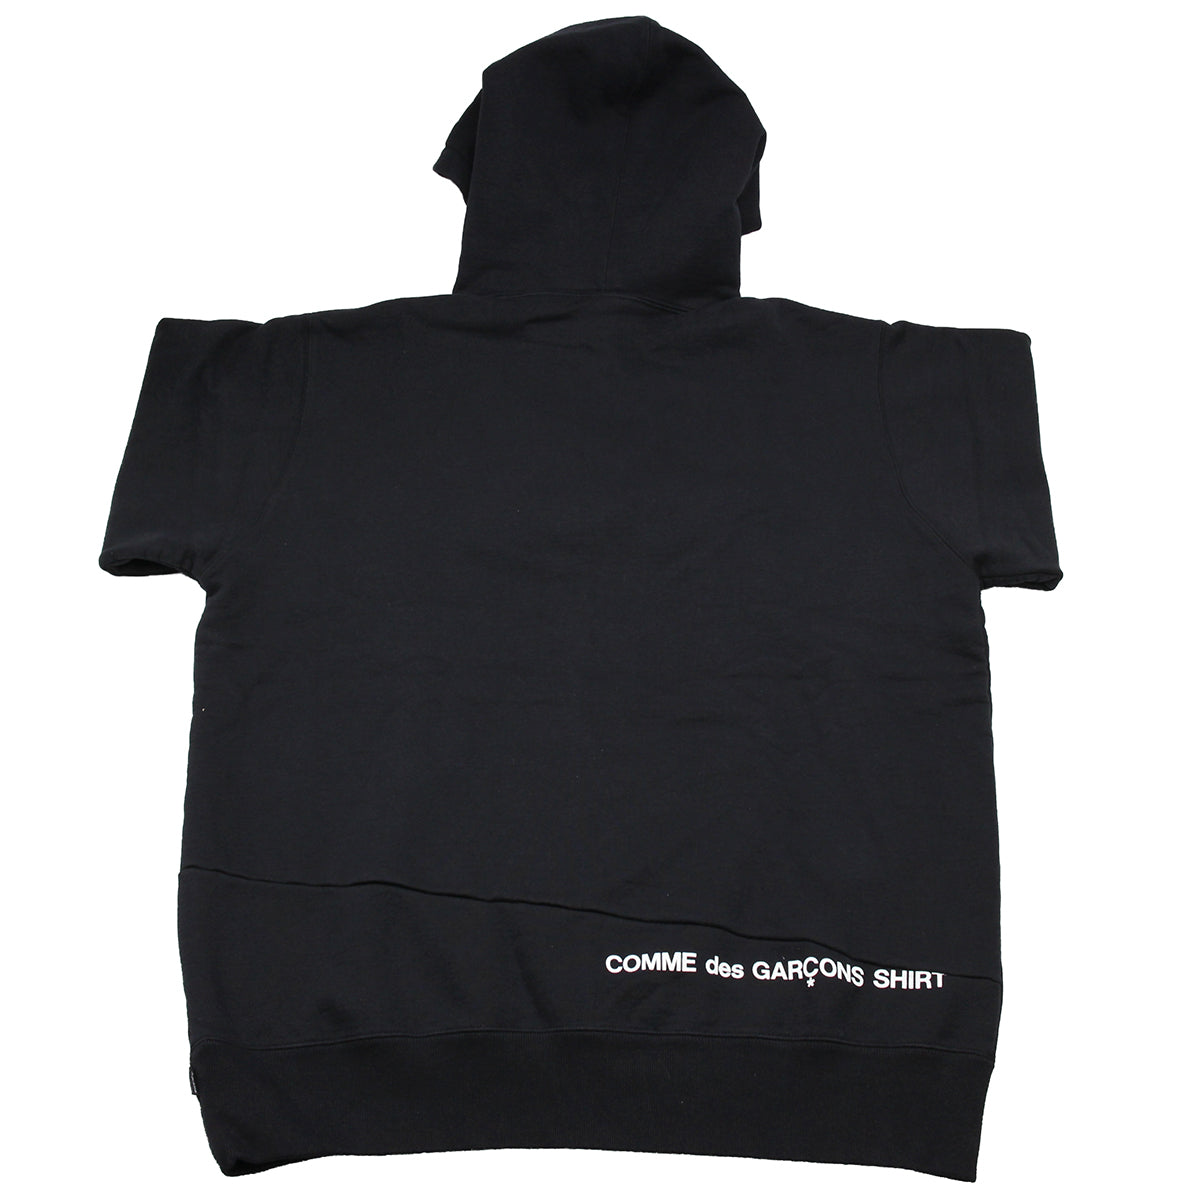 メンズsupreme CDG shirt Split box box logo XL黒